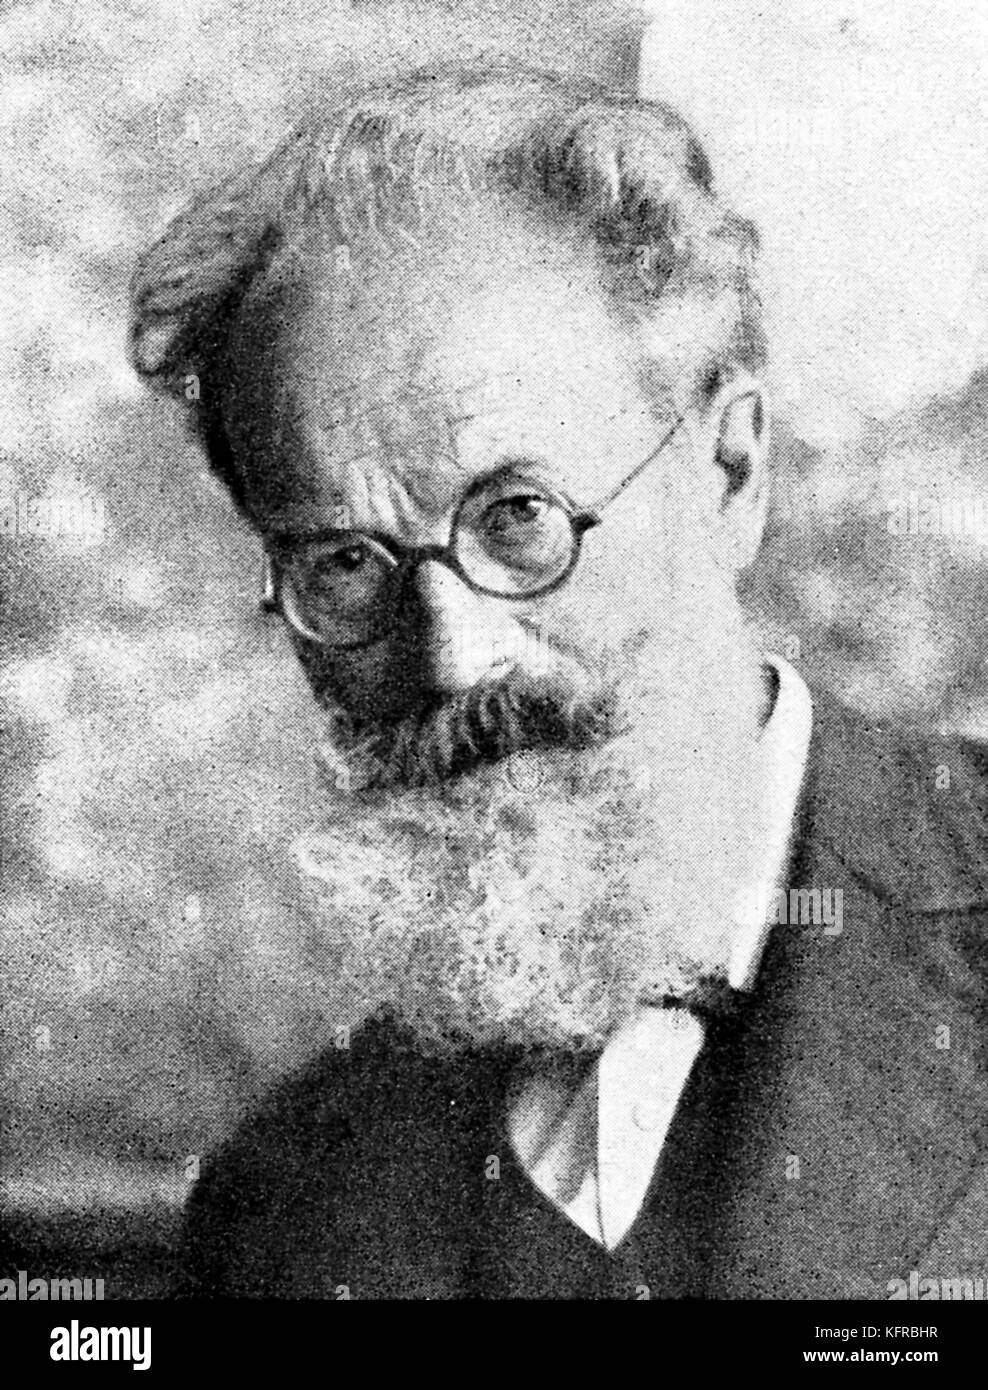 Alfred Roller, Artista austríaco, arquitecto y diseñador de vestuario. 1864-1935 Foto de stock